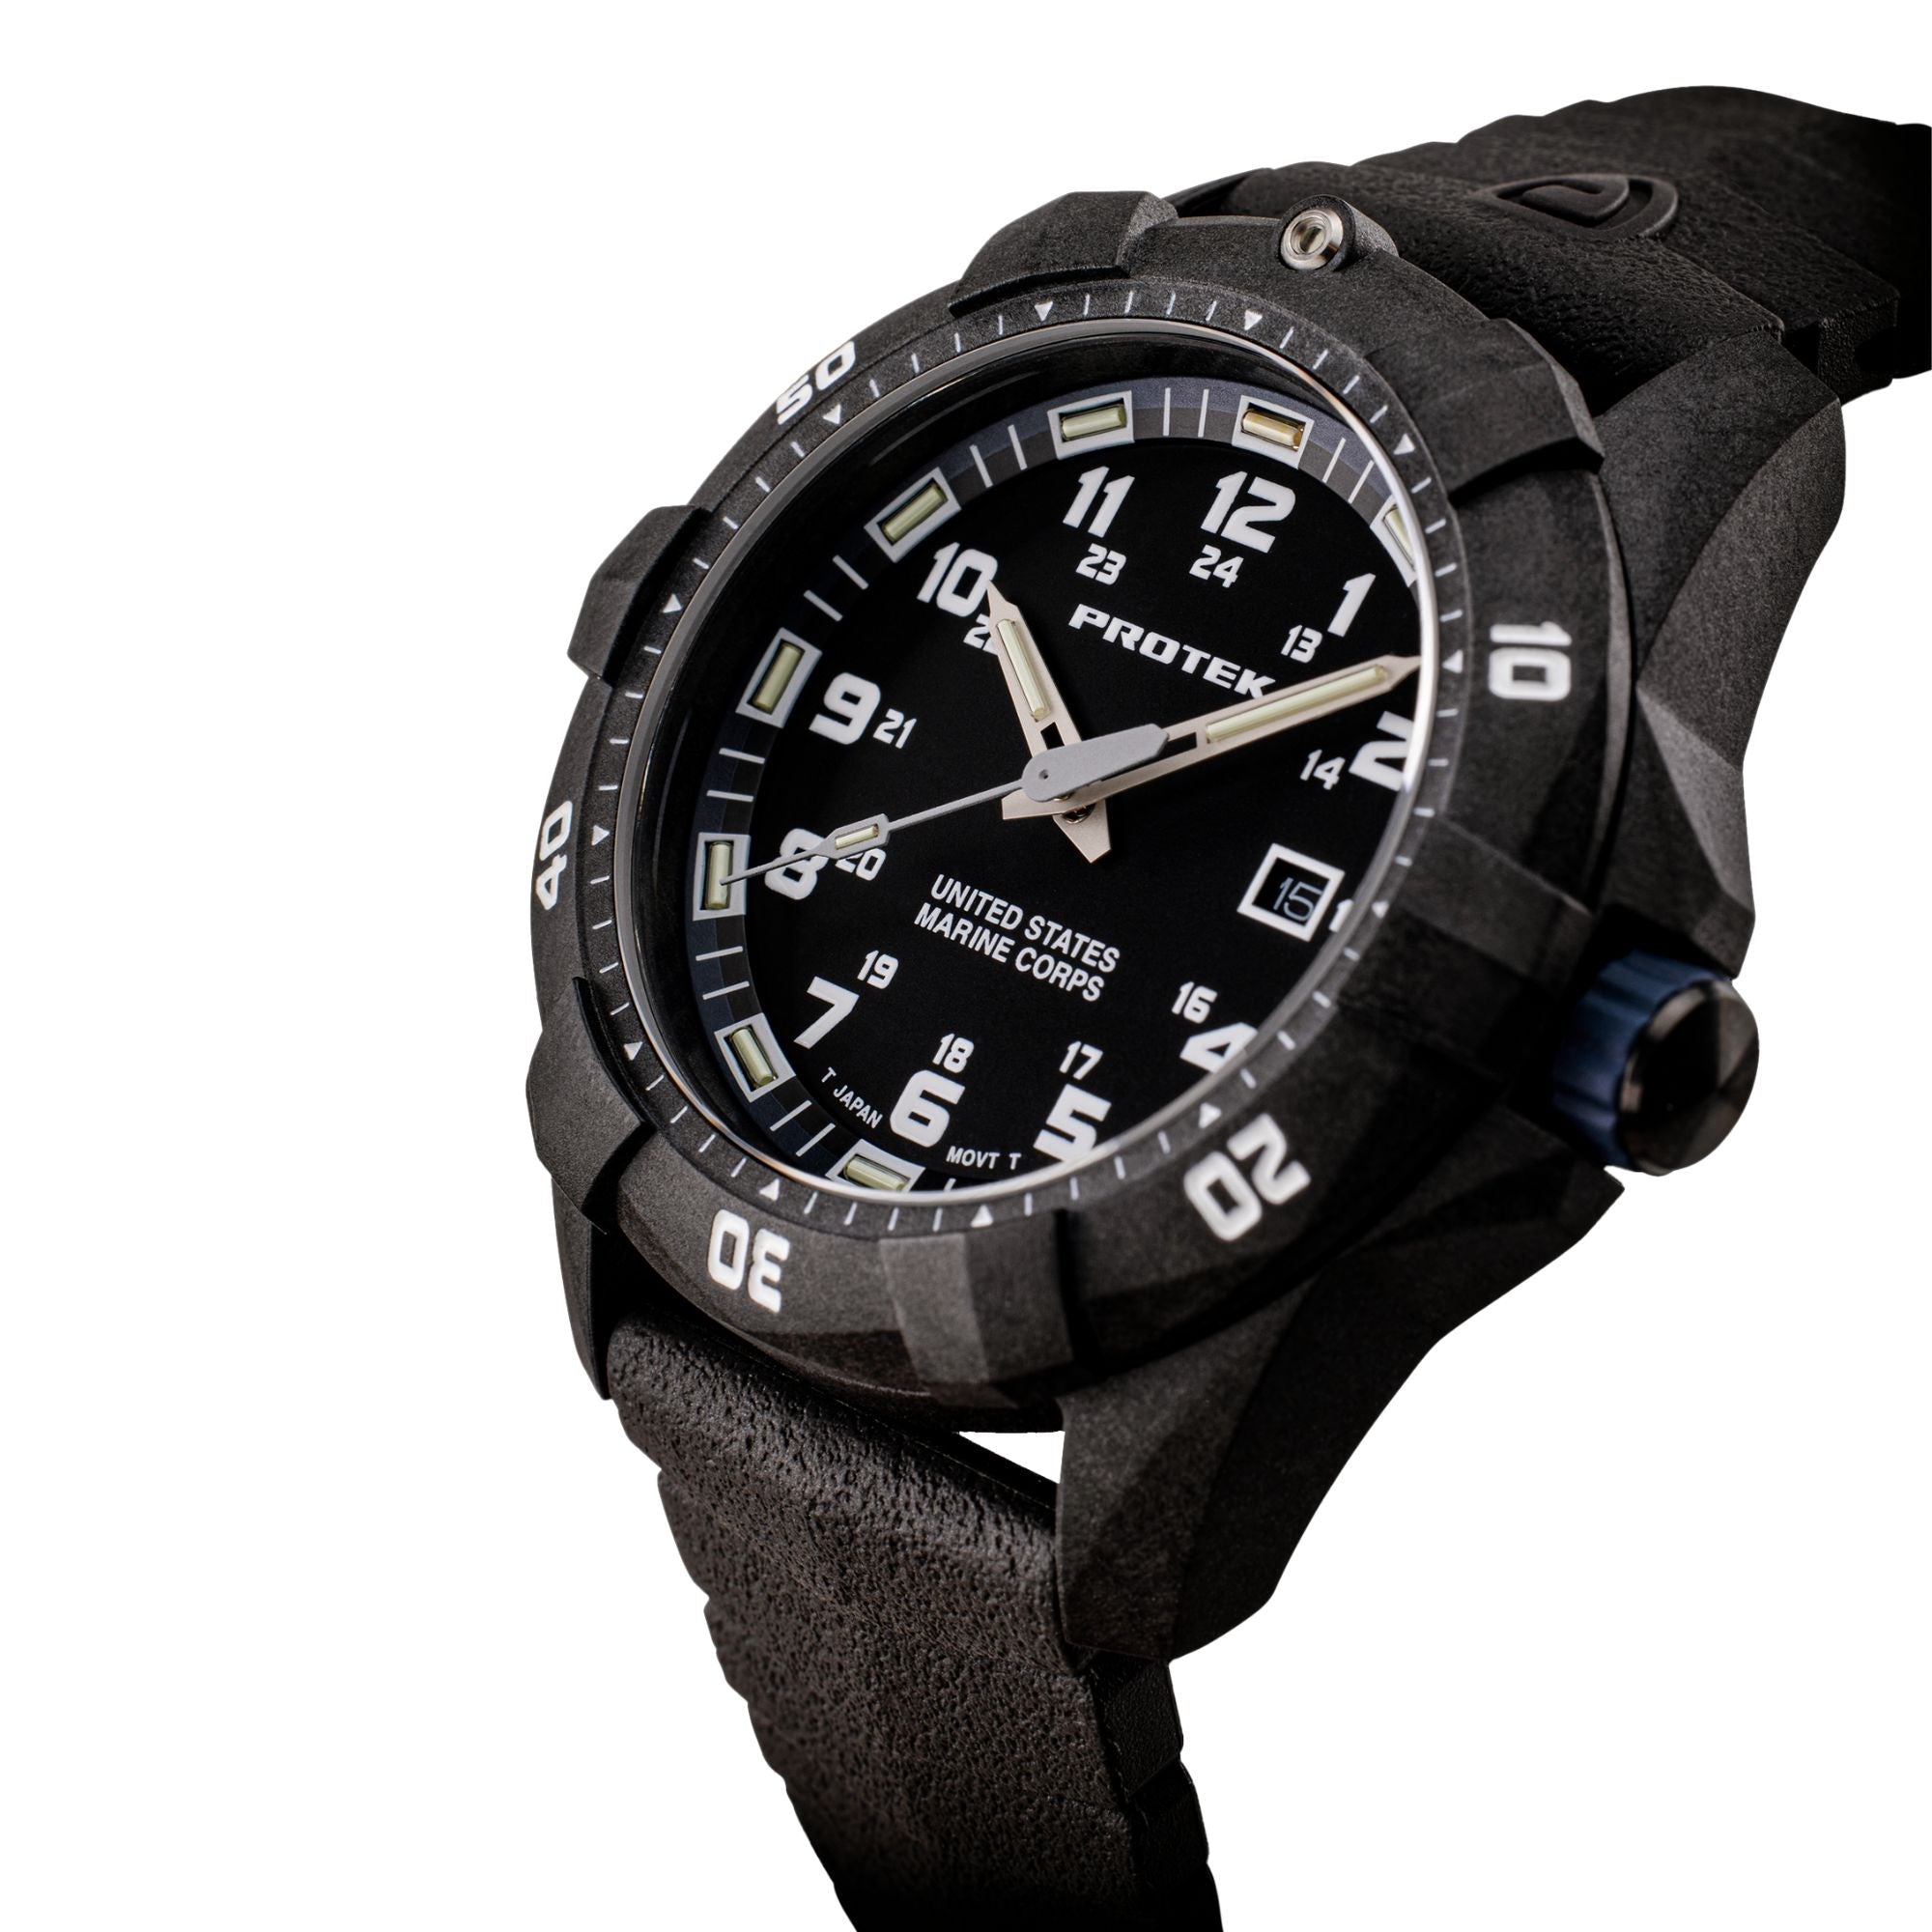 ProTek USMC Carbon Composite Dive Watch - Carbon/Black/Blue (Black Band)